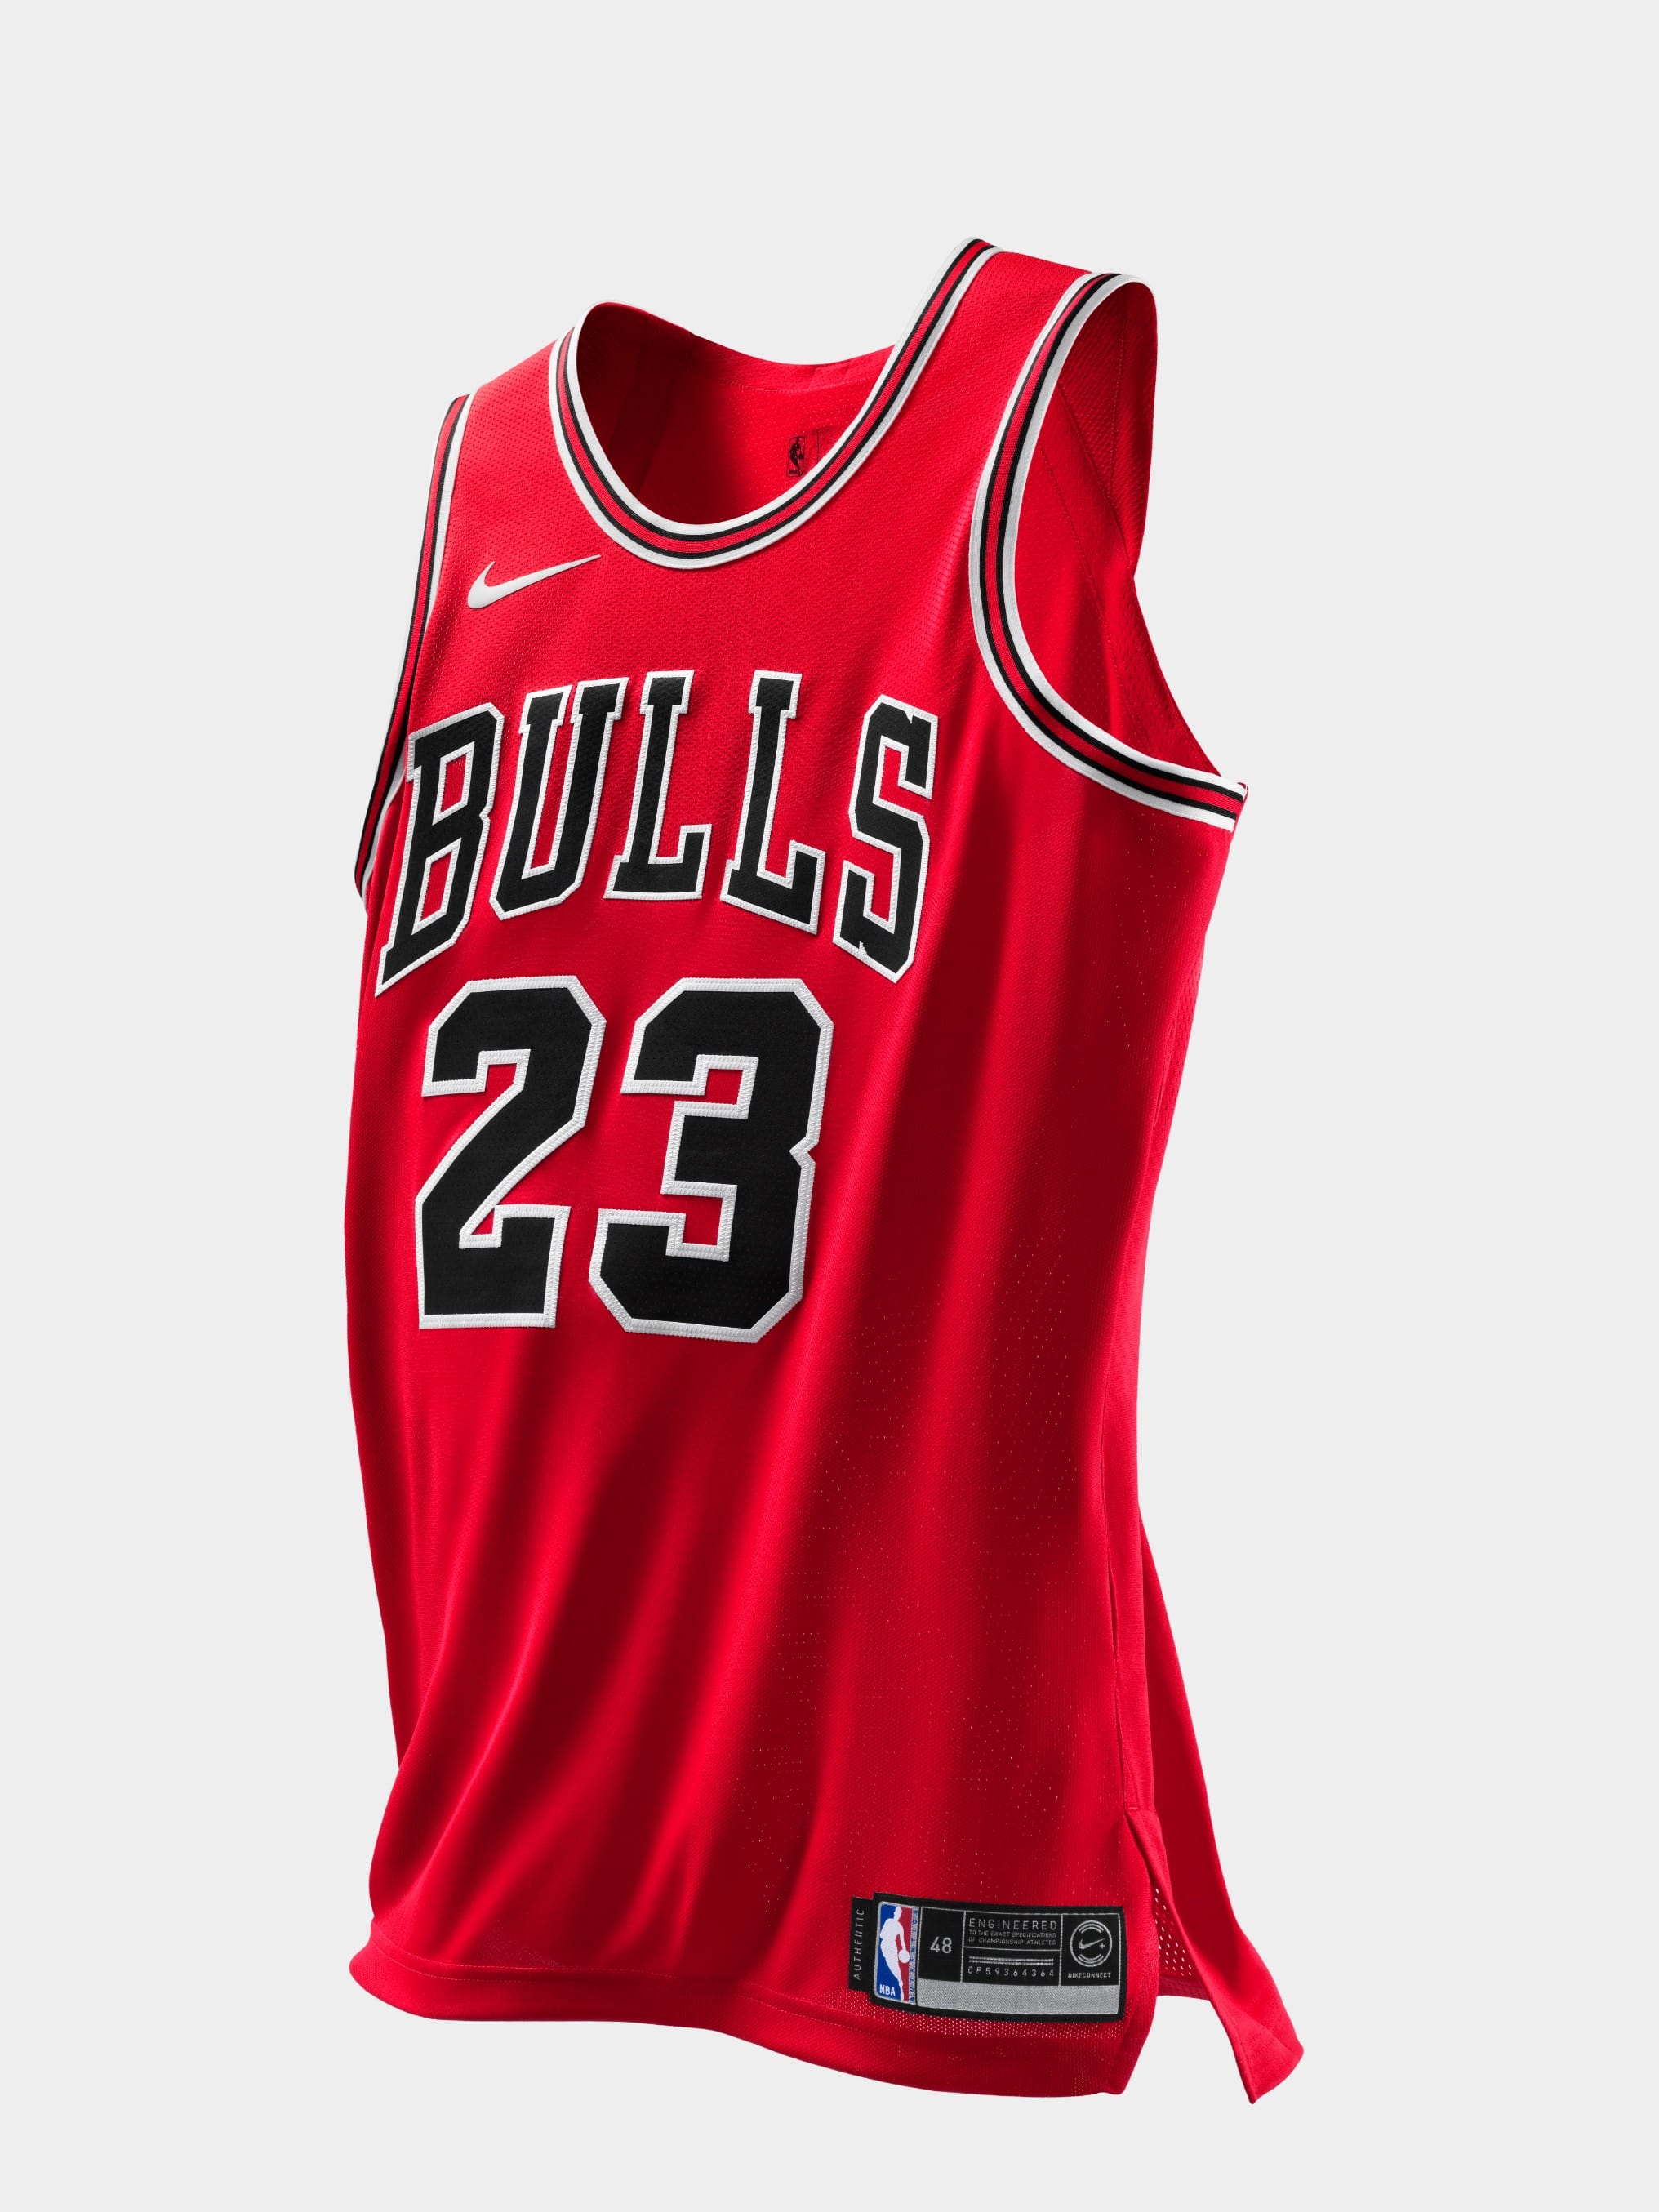 Nike x Michael Jordan's Bulls Jersey 